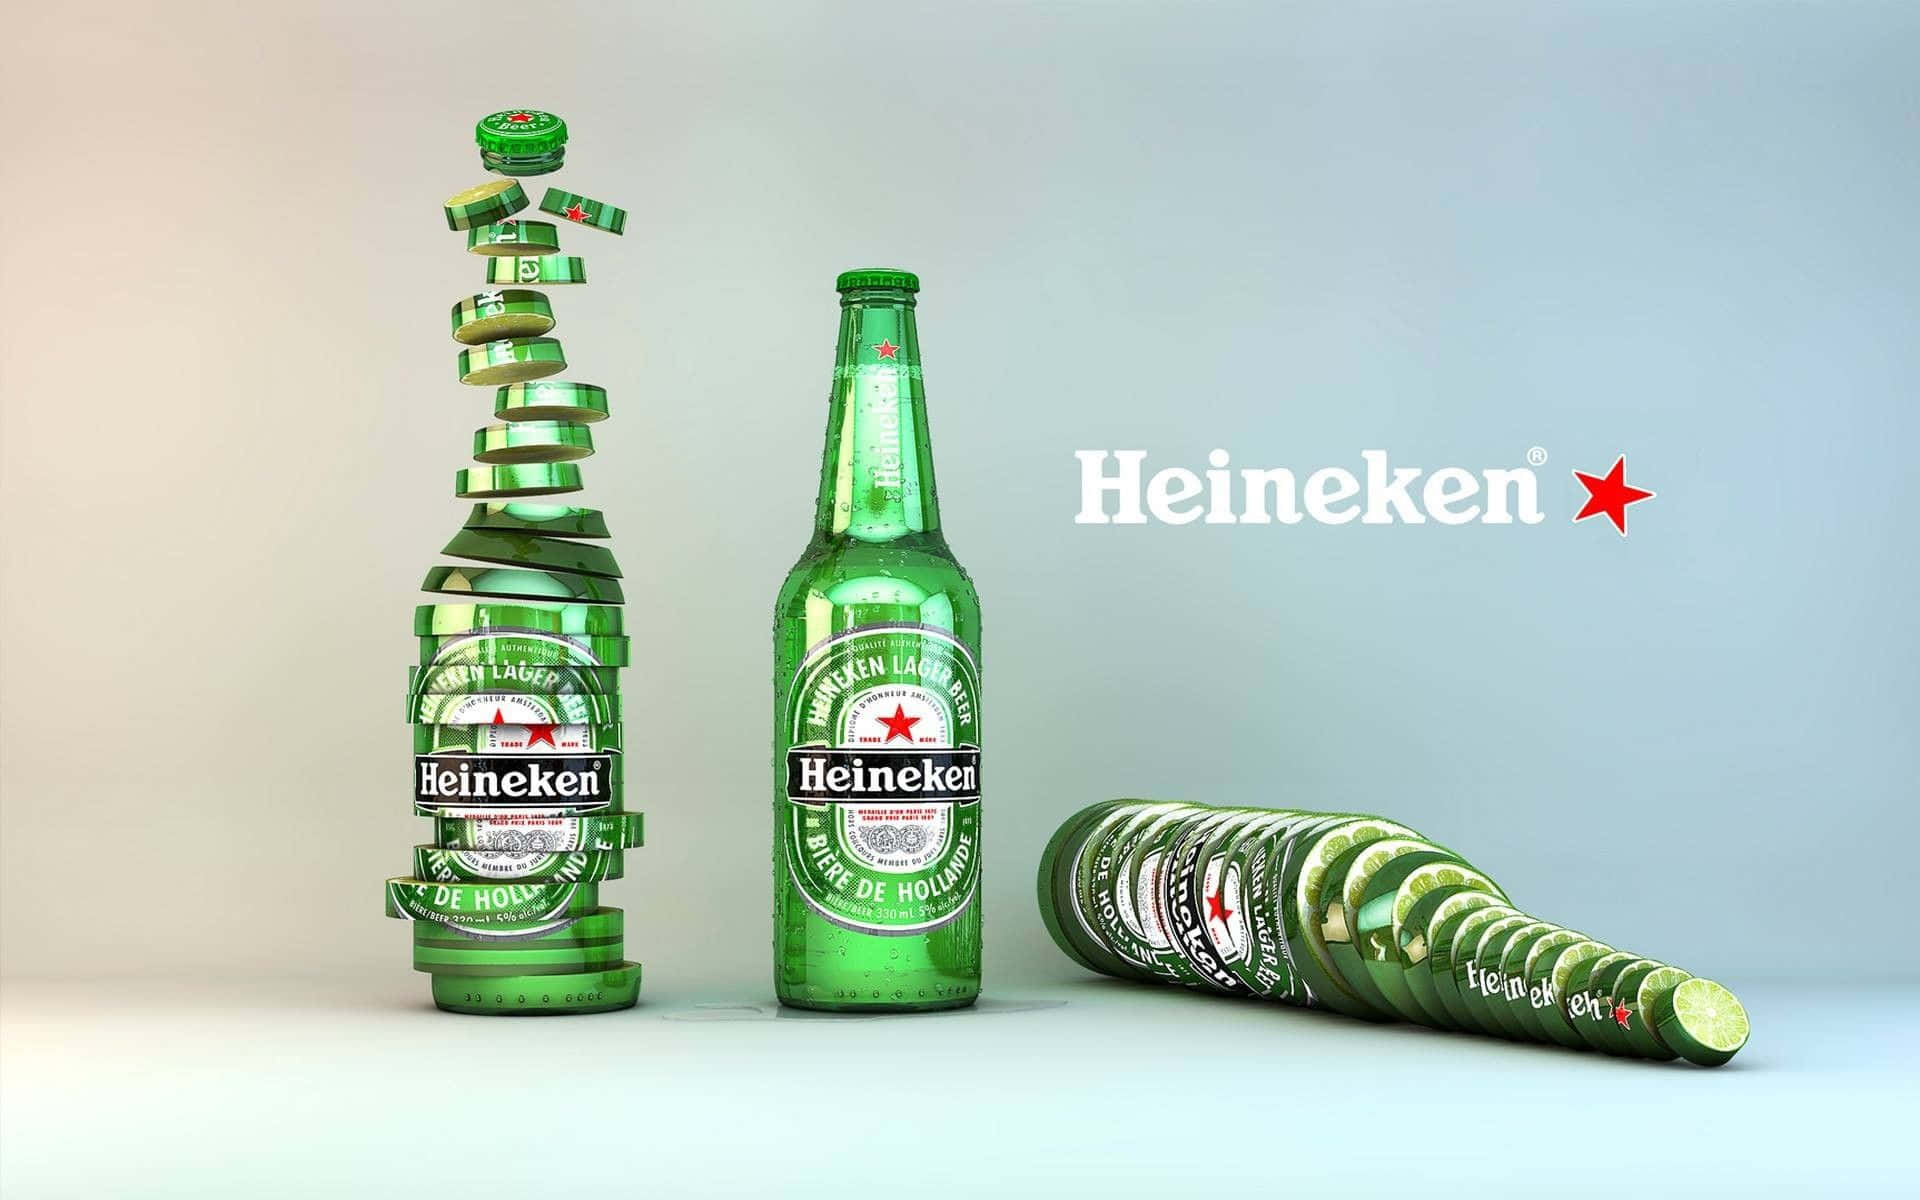 Heineken1920 X 1200 Baggrund.